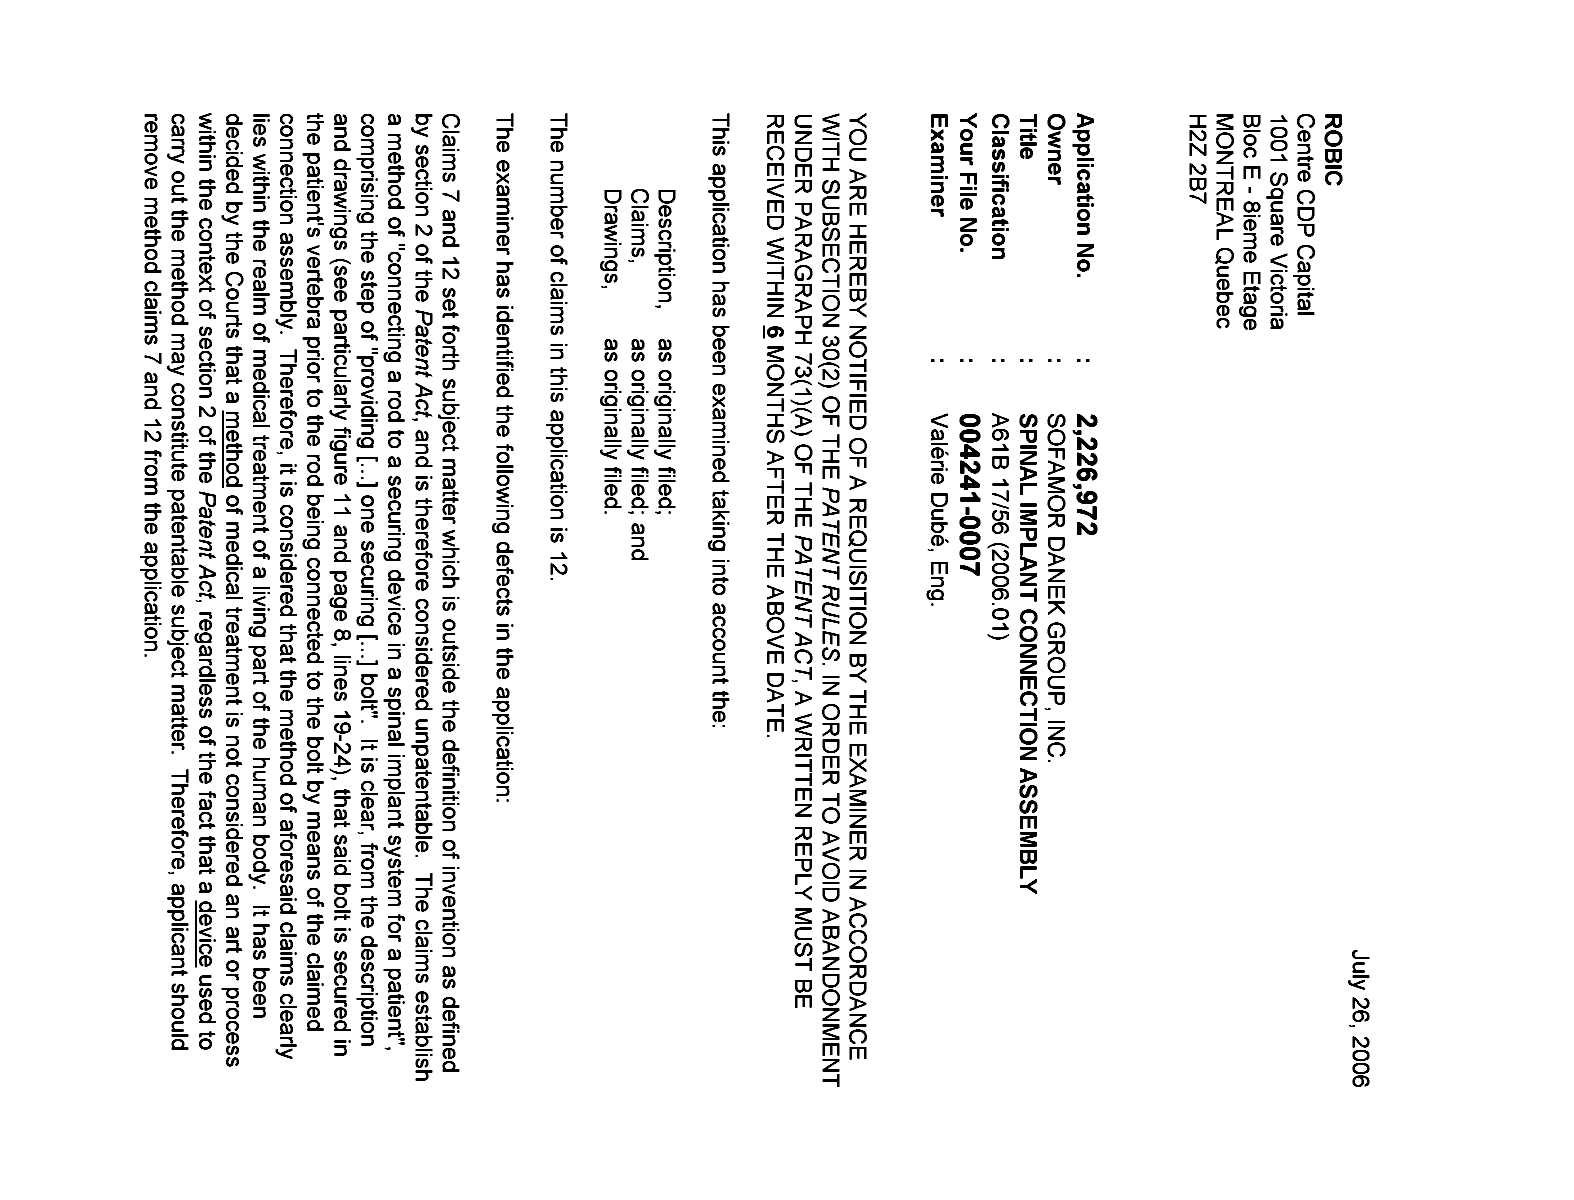 Document de brevet canadien 2226972. Poursuite-Amendment 20060726. Image 1 de 3